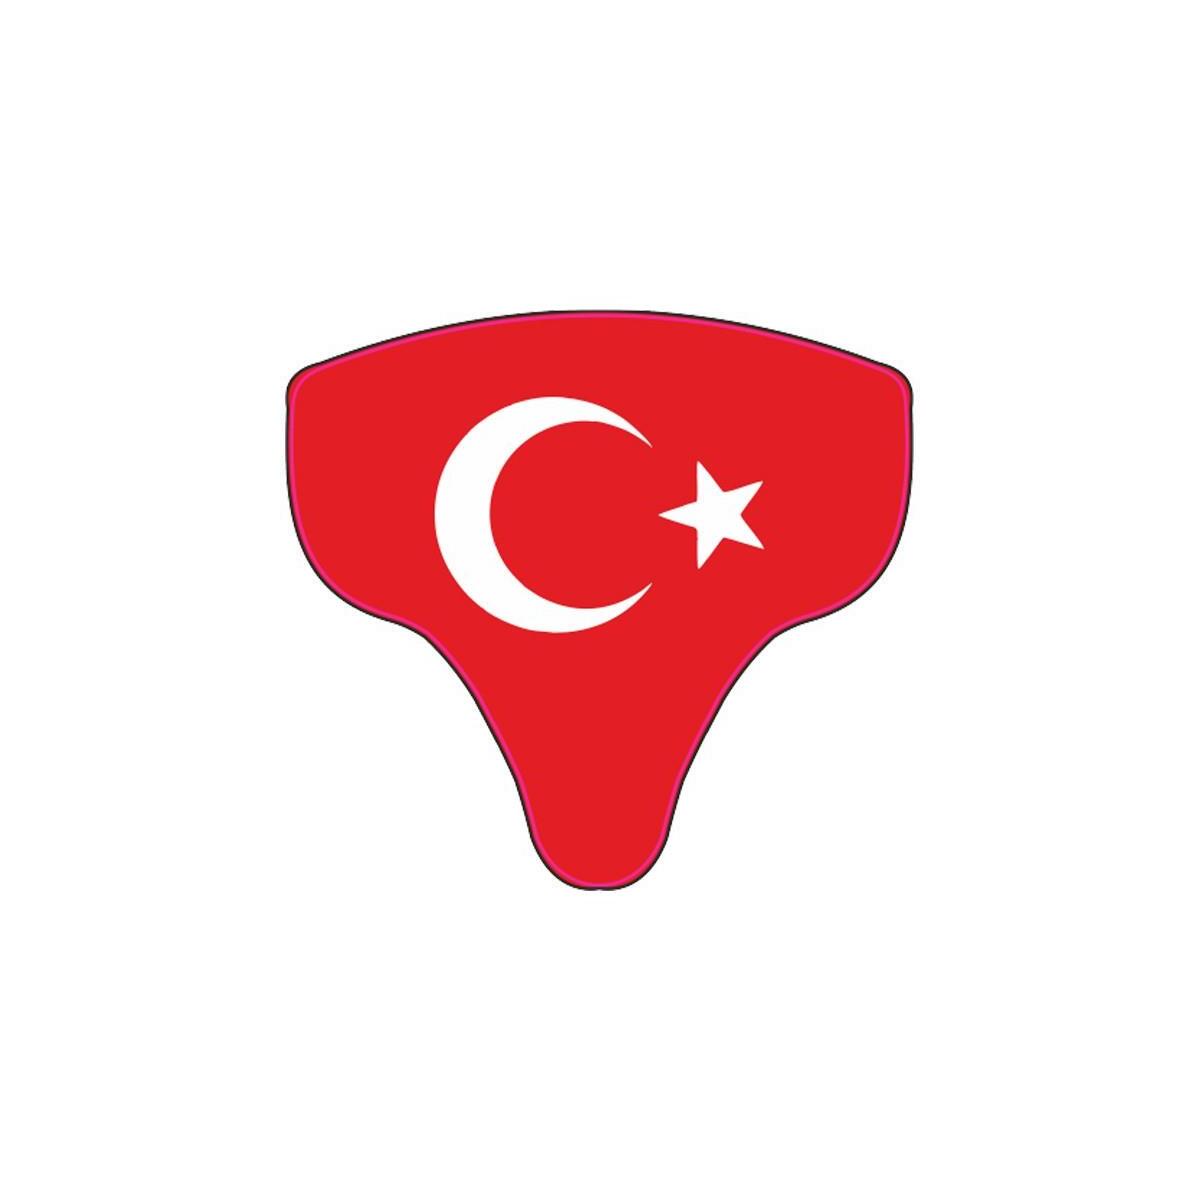 Sevenkardeşler Türk Bayrağı Mondial Mh Drift 2011 - 2020 Uyumlu Siperlik Sticker